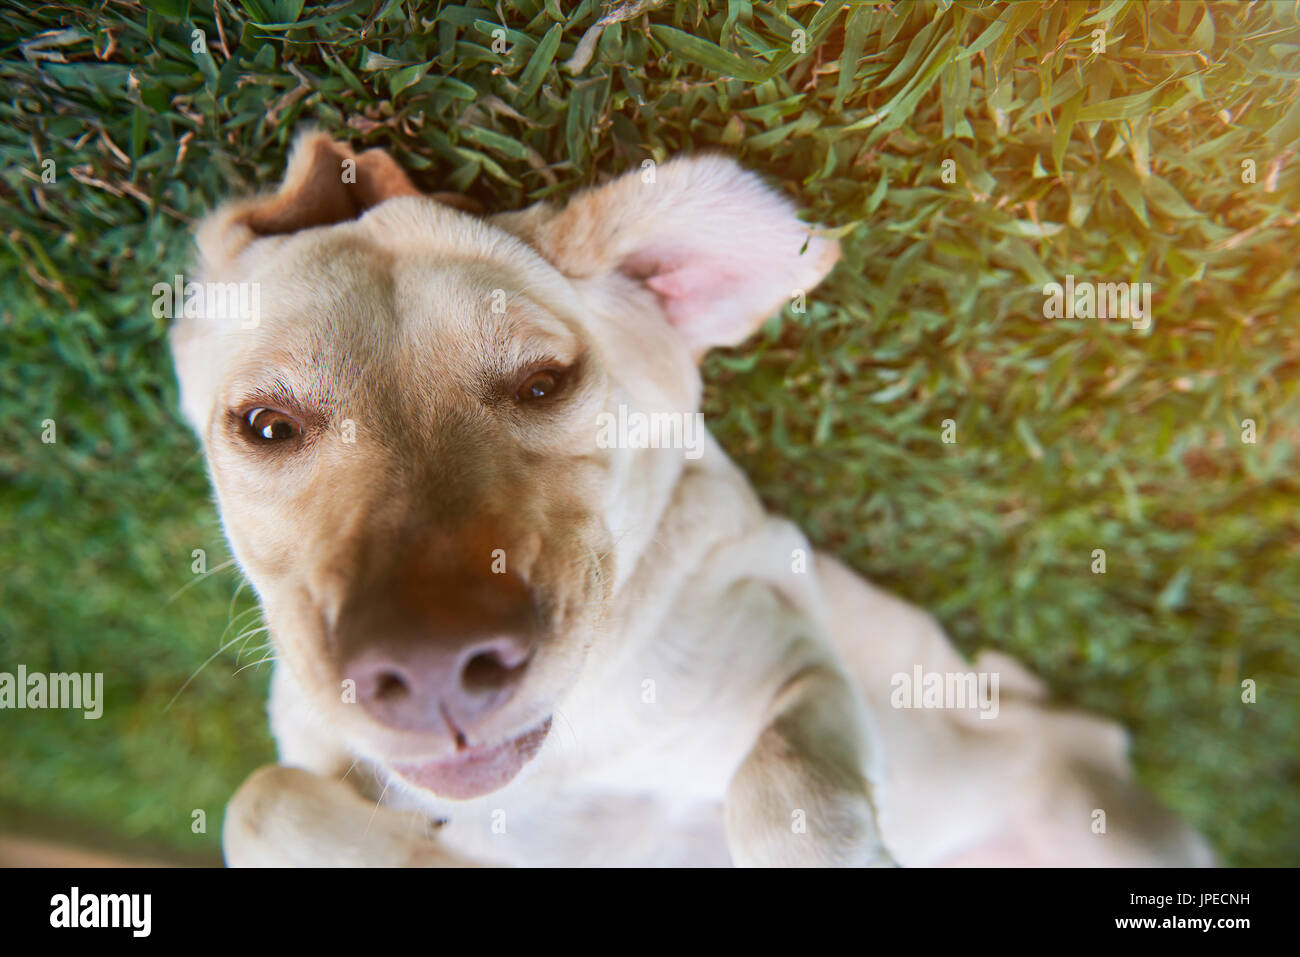 Cara divertida de perro labrador marrón recostada sobre la hierba verde. Closeup retrato de perro marrón Foto de stock